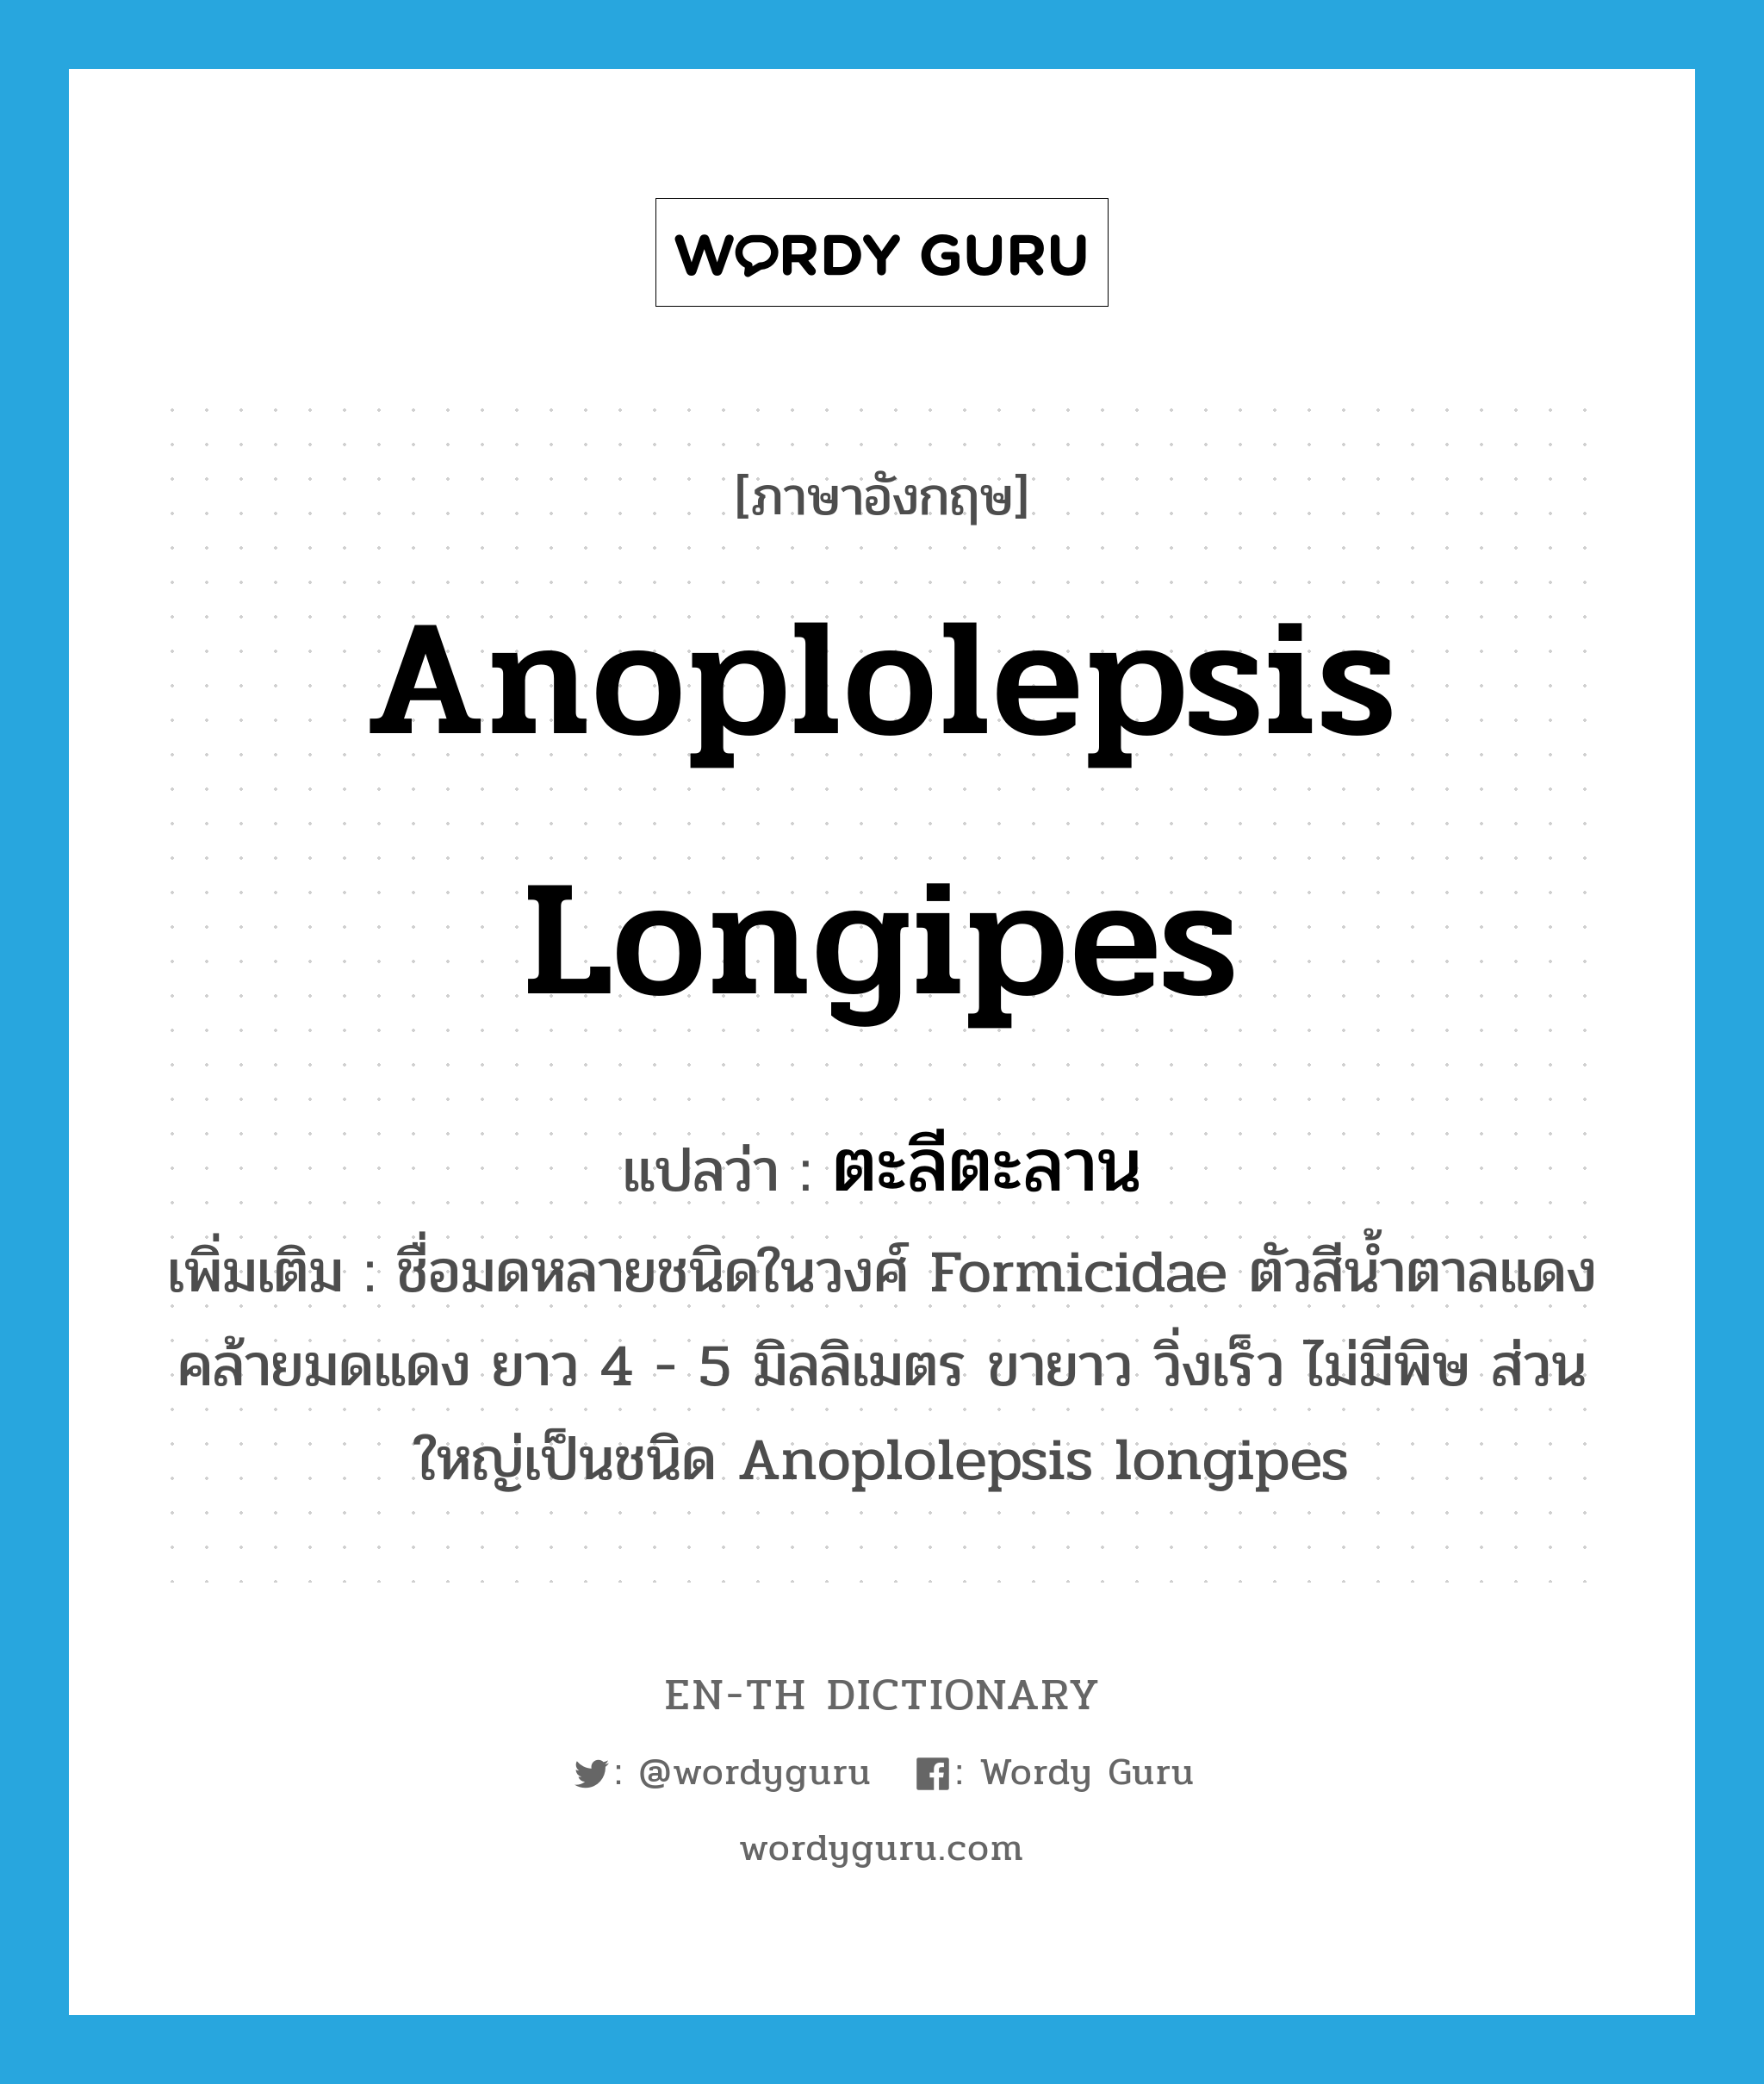 Anoplolepsis longipes แปลว่า?, คำศัพท์ภาษาอังกฤษ Anoplolepsis longipes แปลว่า ตะลีตะลาน ประเภท N เพิ่มเติม ชื่อมดหลายชนิดในวงศ์ Formicidae ตัวสีน้ำตาลแดงคล้ายมดแดง ยาว 4 - 5 มิลลิเมตร ขายาว วิ่งเร็ว ไม่มีพิษ ส่วนใหญ่เป็นชนิด Anoplolepsis longipes หมวด N